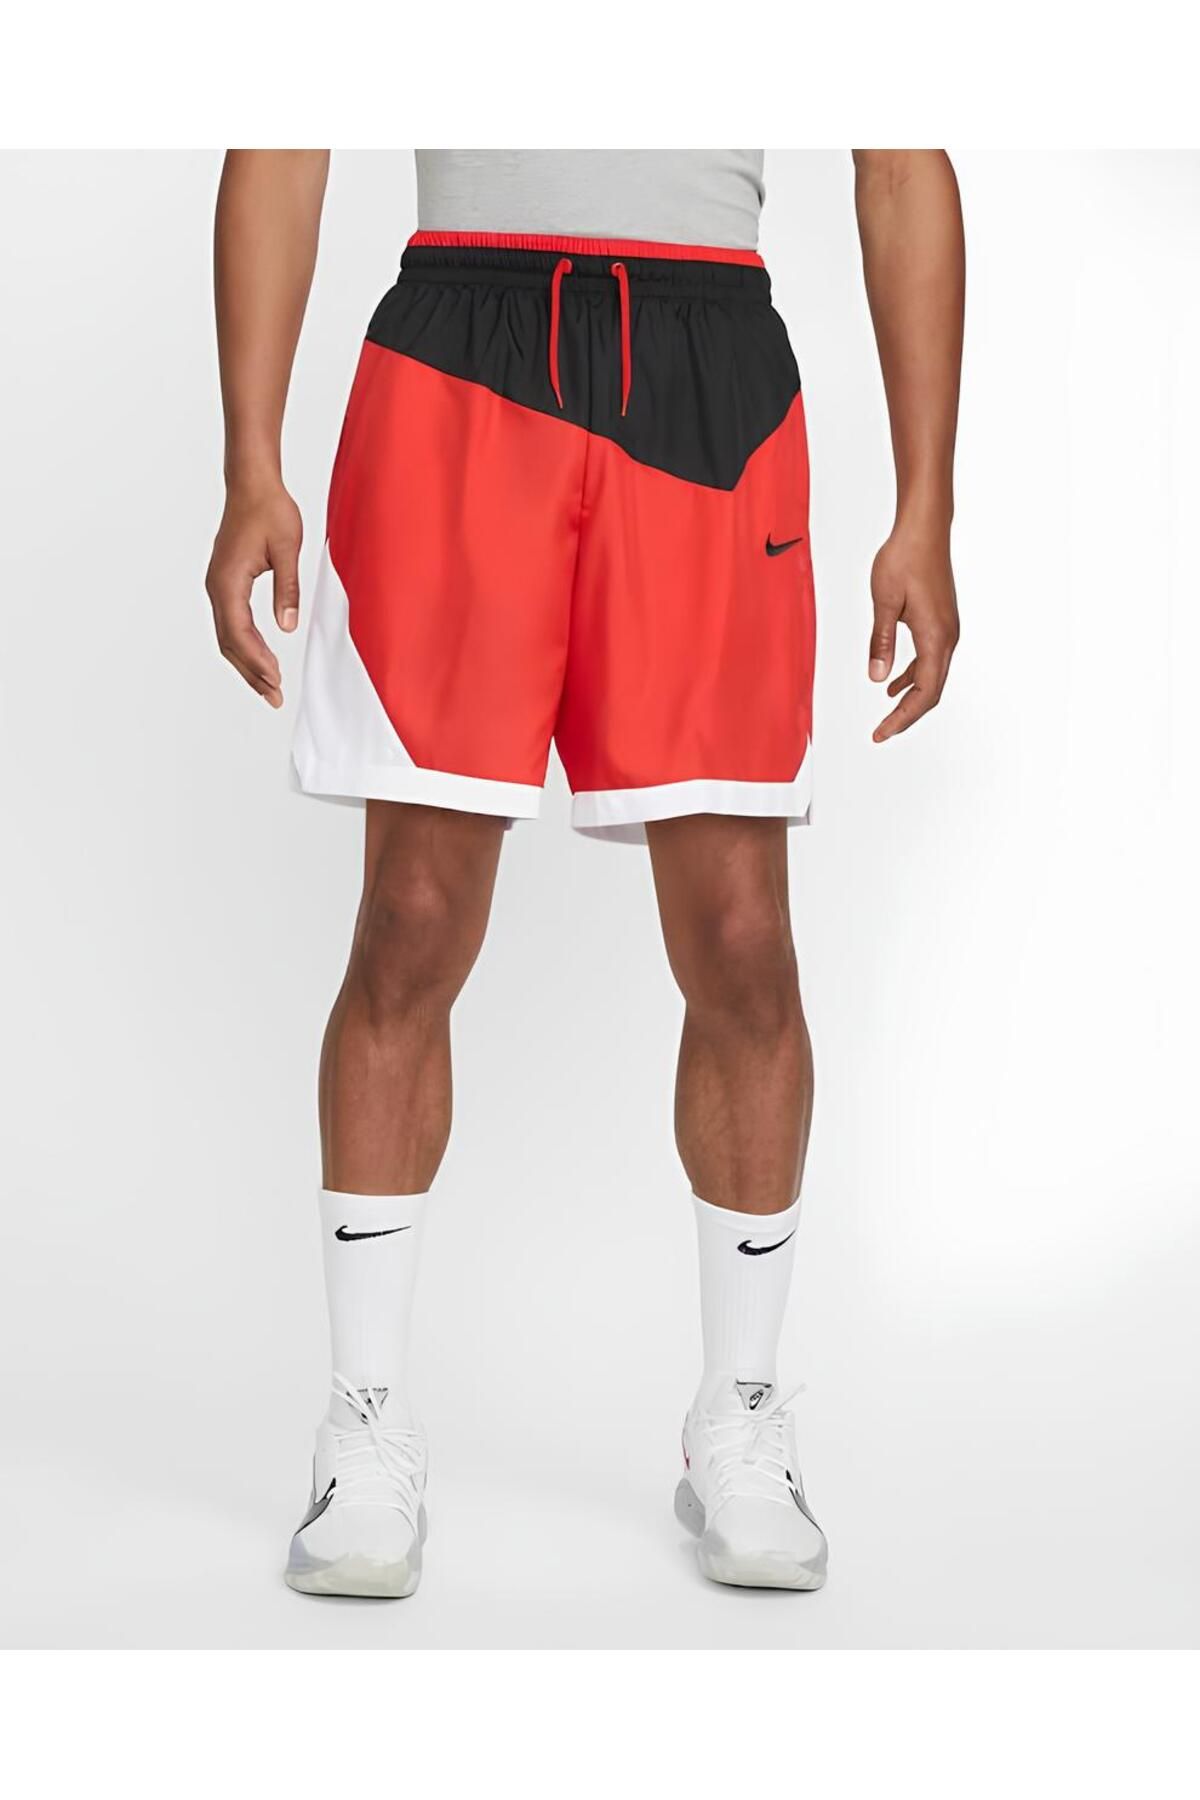 Nike DNA Woven Erkek Kırmızı Spor Basketbol Şort